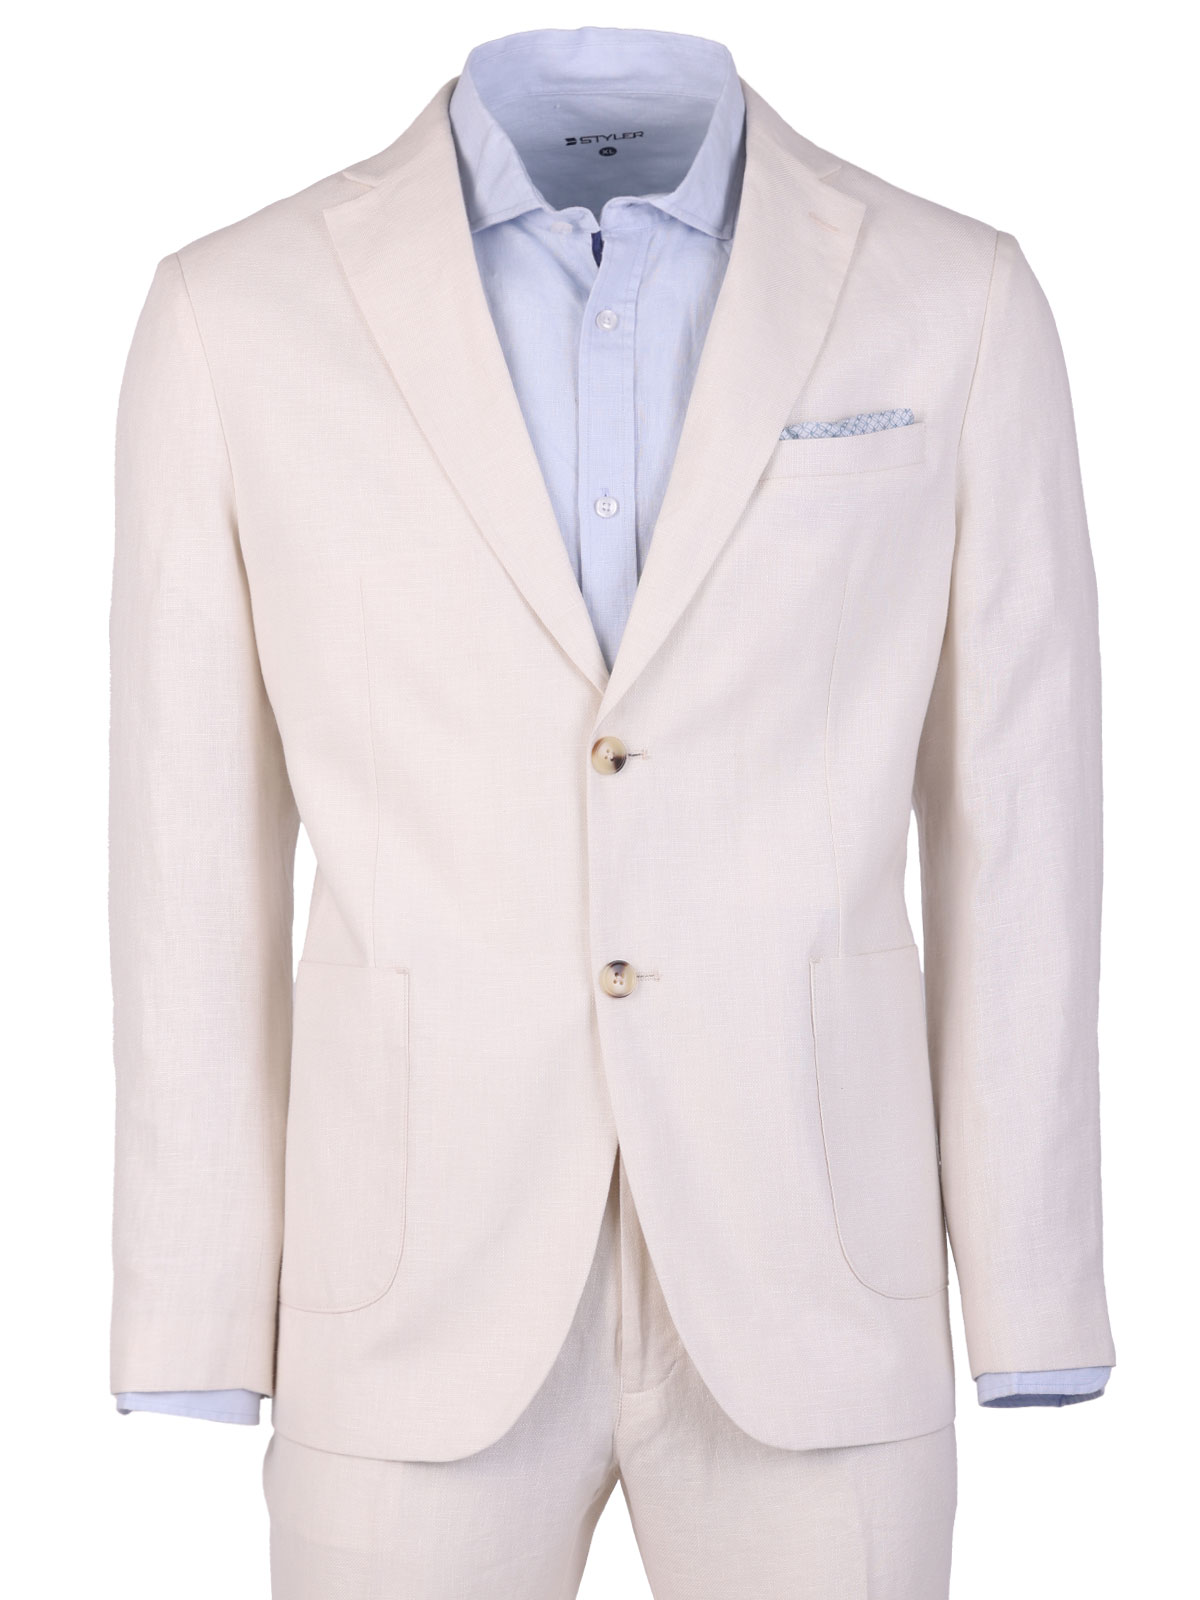 Ανδρικό λινό κοστούμι σε λευκό χρώμα - 68078 € 199.10 img2